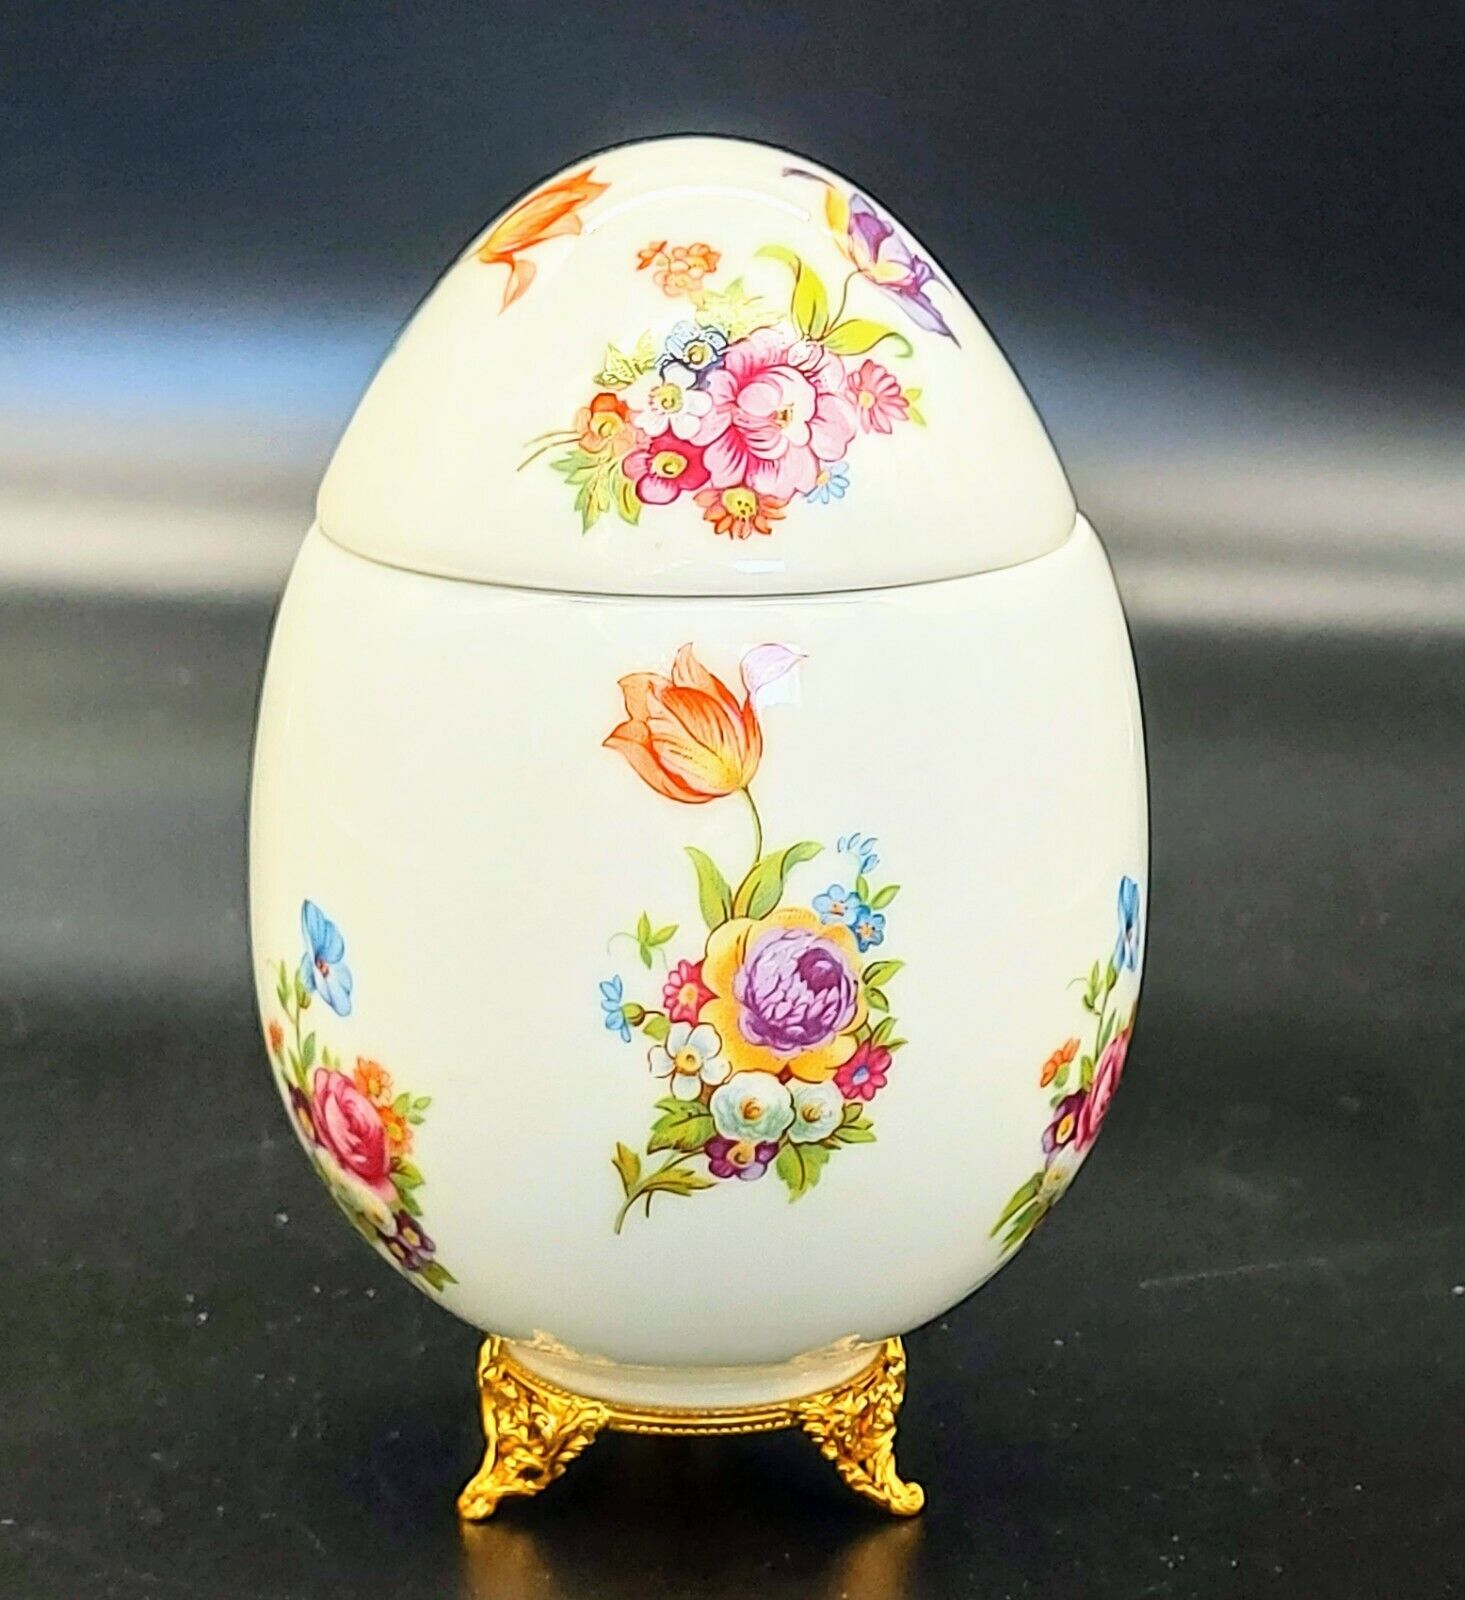 Limoges Artoria France Jumbo Big Porcelain Egg Floral Design Trinket Box 5.5”x4”